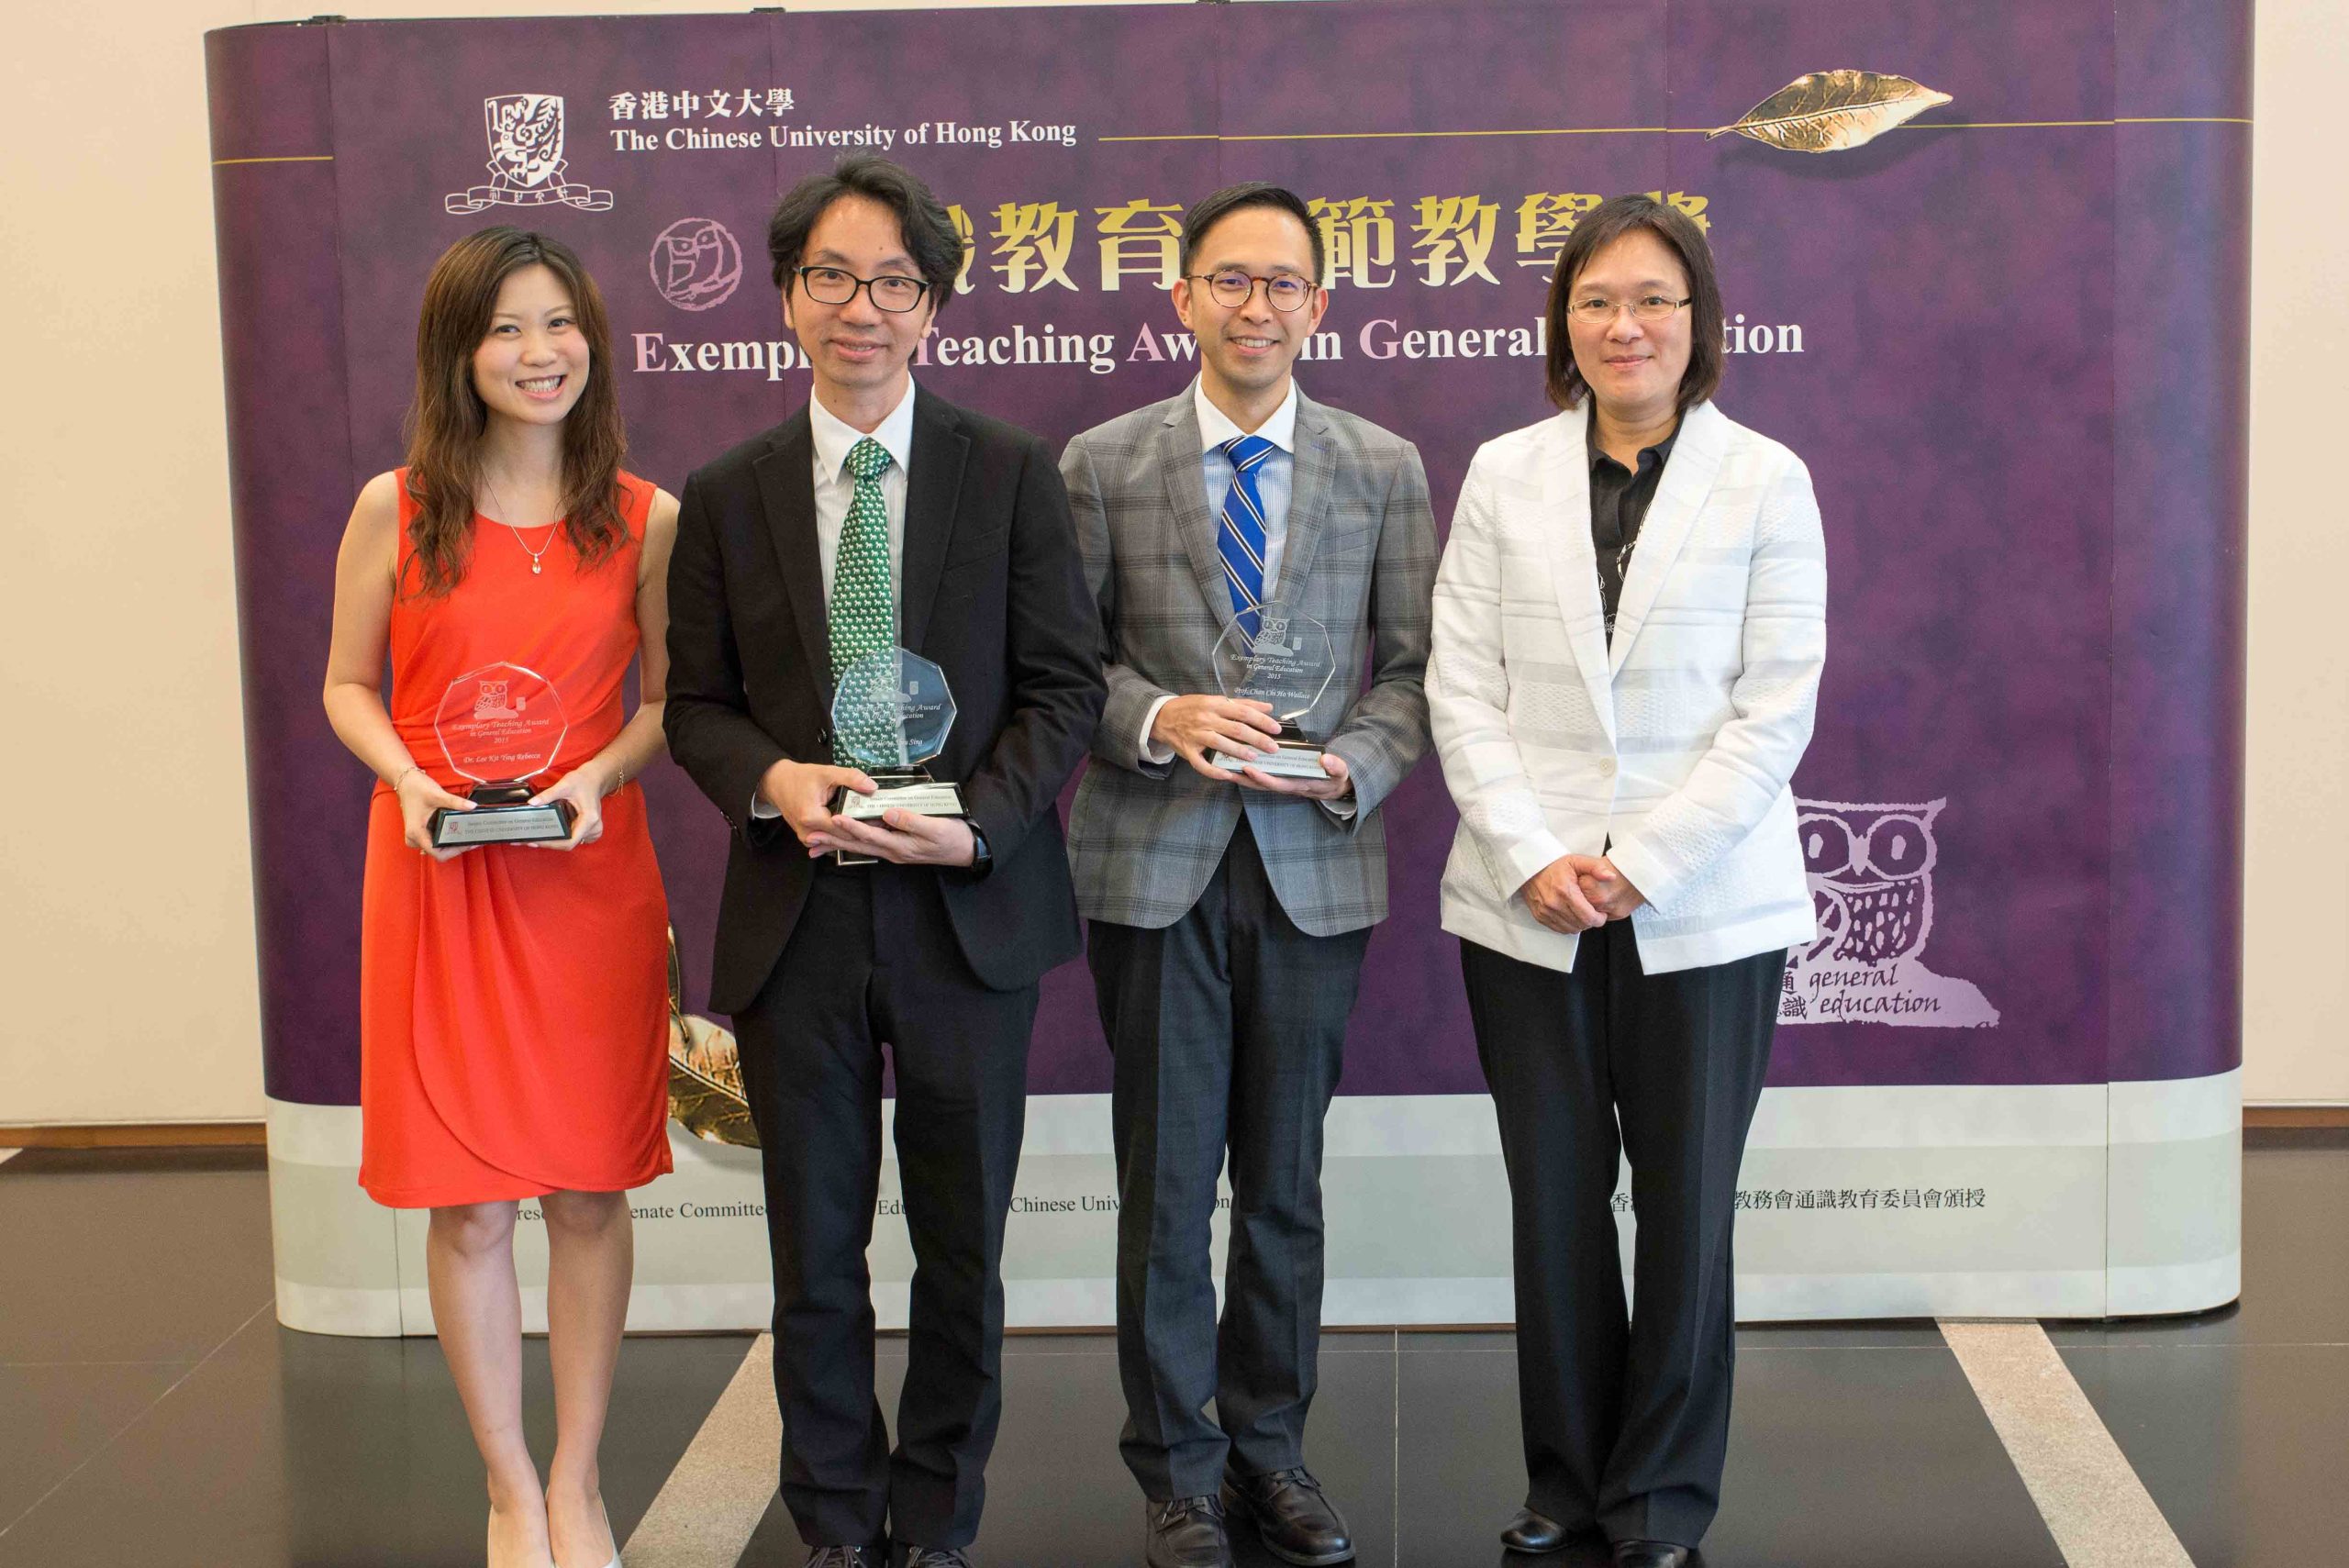 Professor Poon Wai Yin, Professor Chan Chi Ho Wallace, Dr. Lee Kit Ying Rebecca and Dr. Tong Shiu Sing